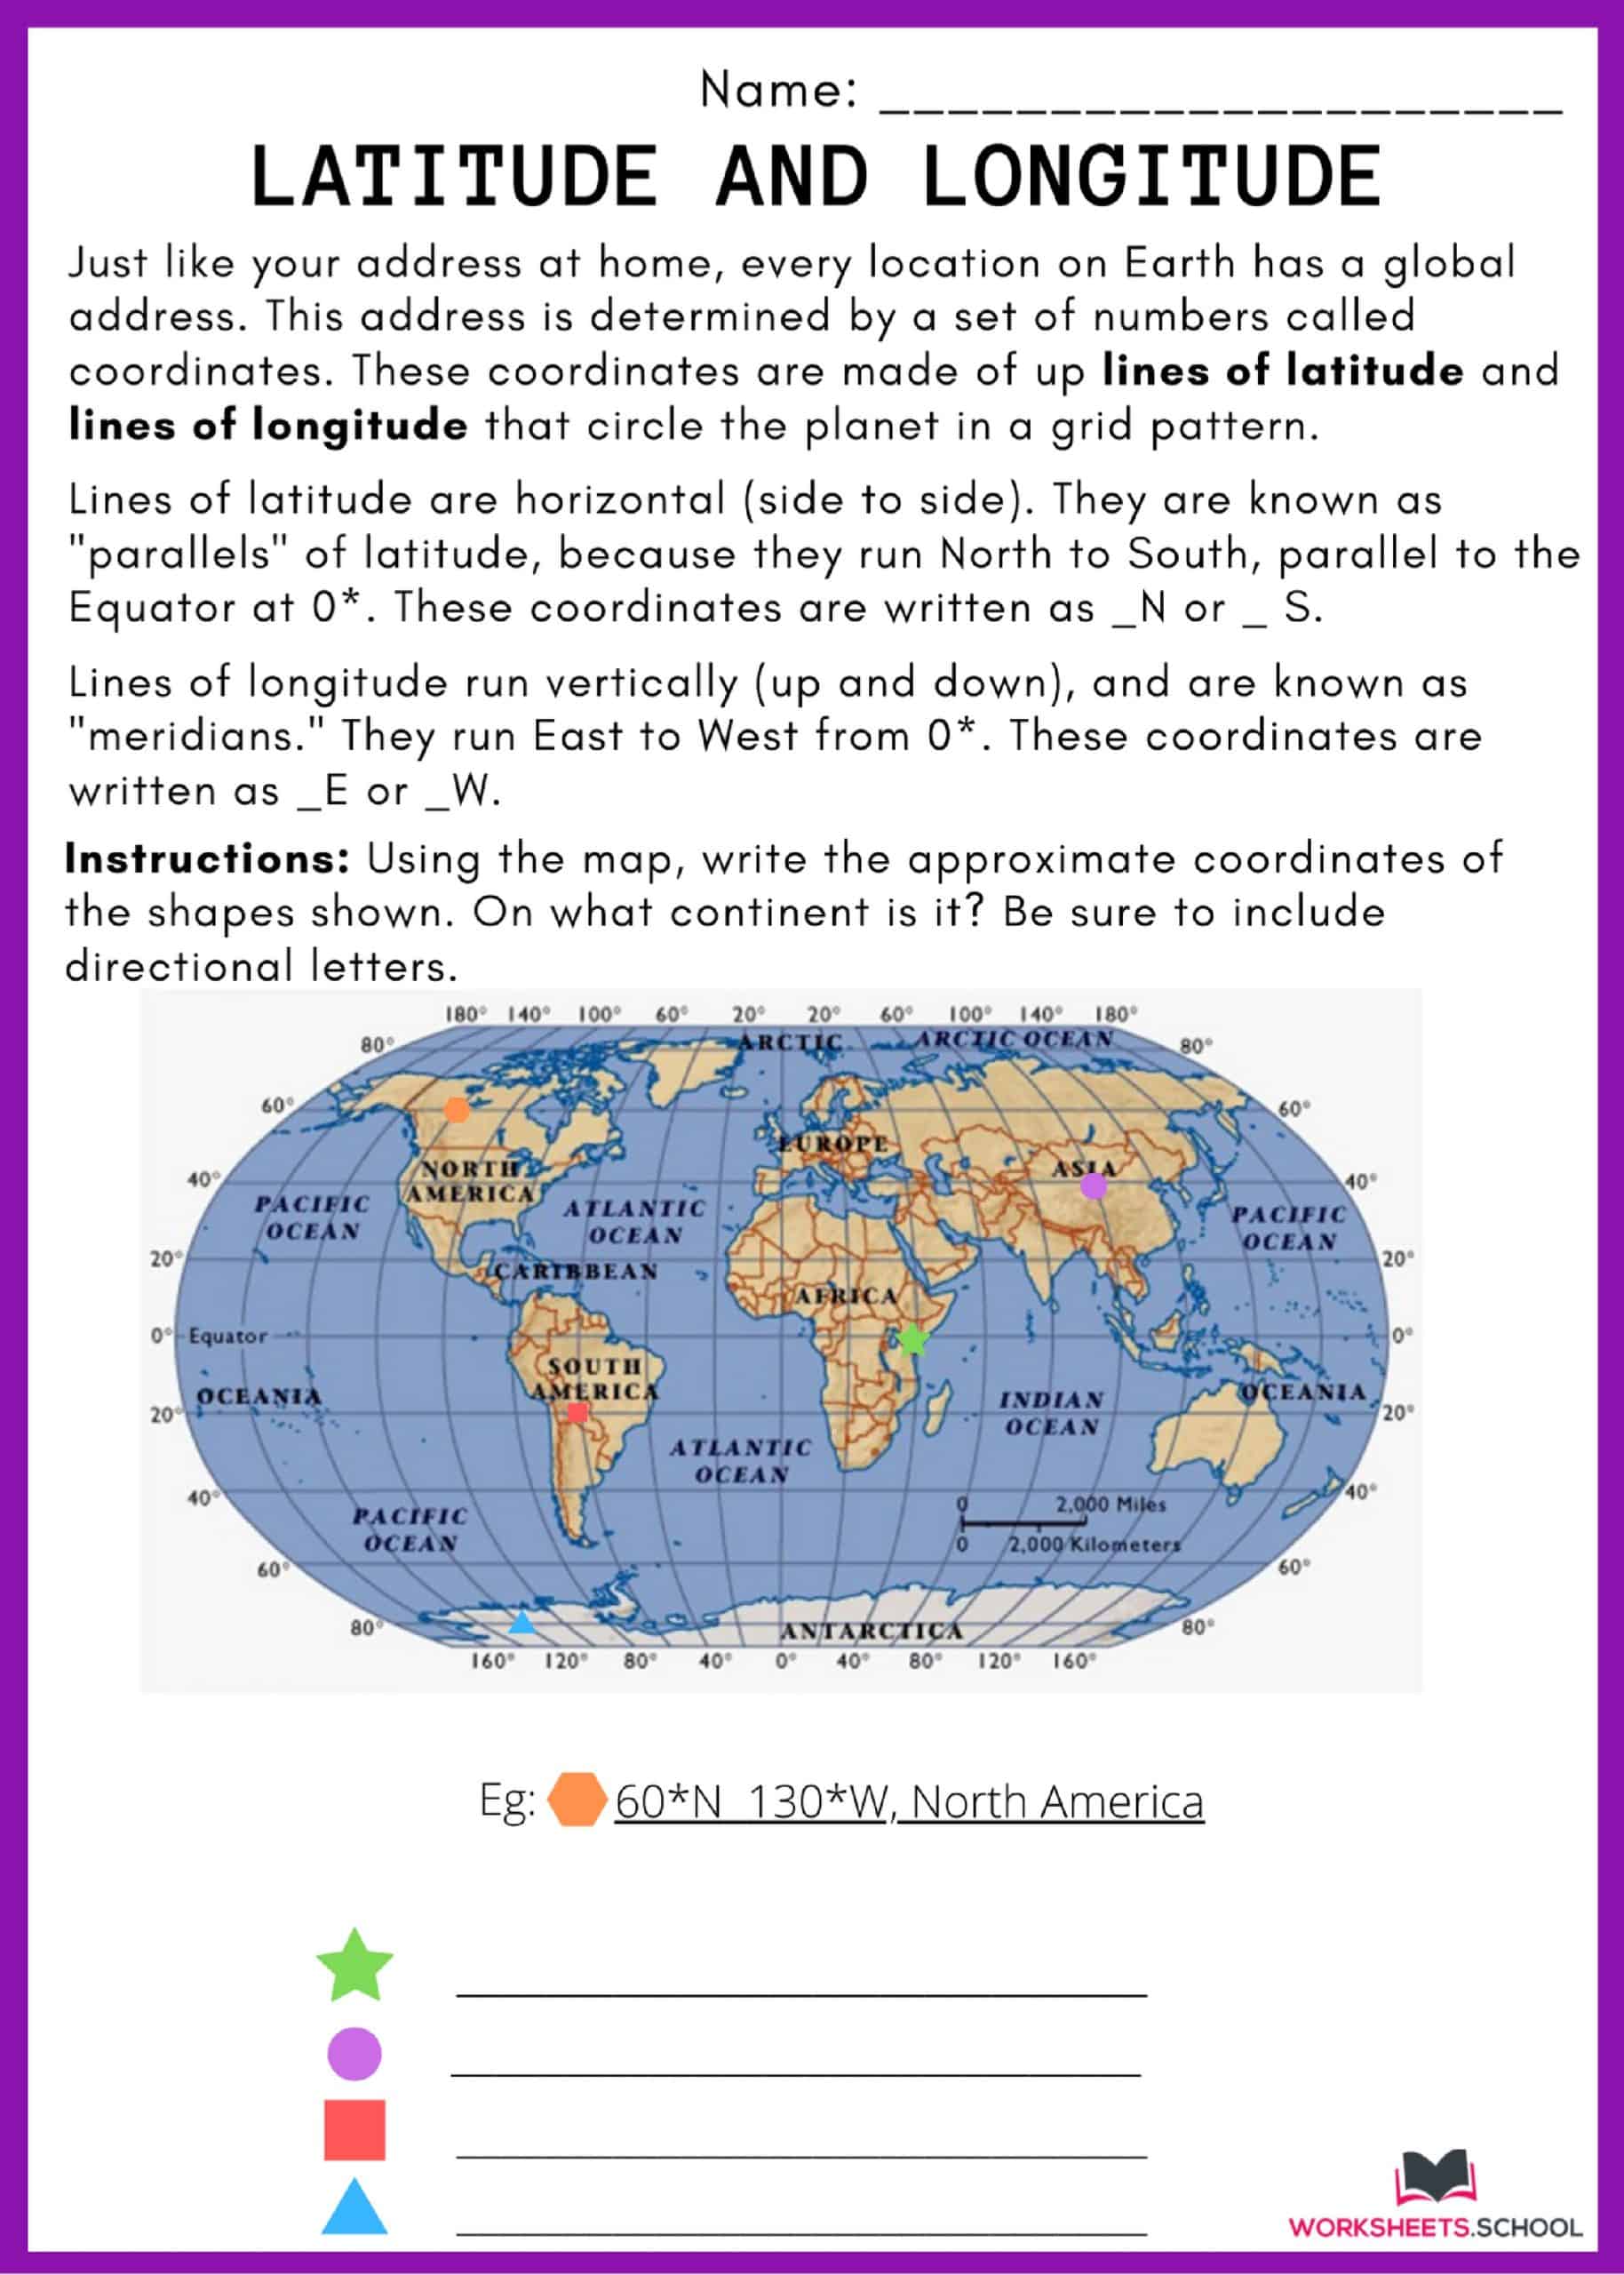 20 Latitude and Longitude Worksheets [PDF] - EduWorksheets In Latitude And Longitude Worksheet Answers